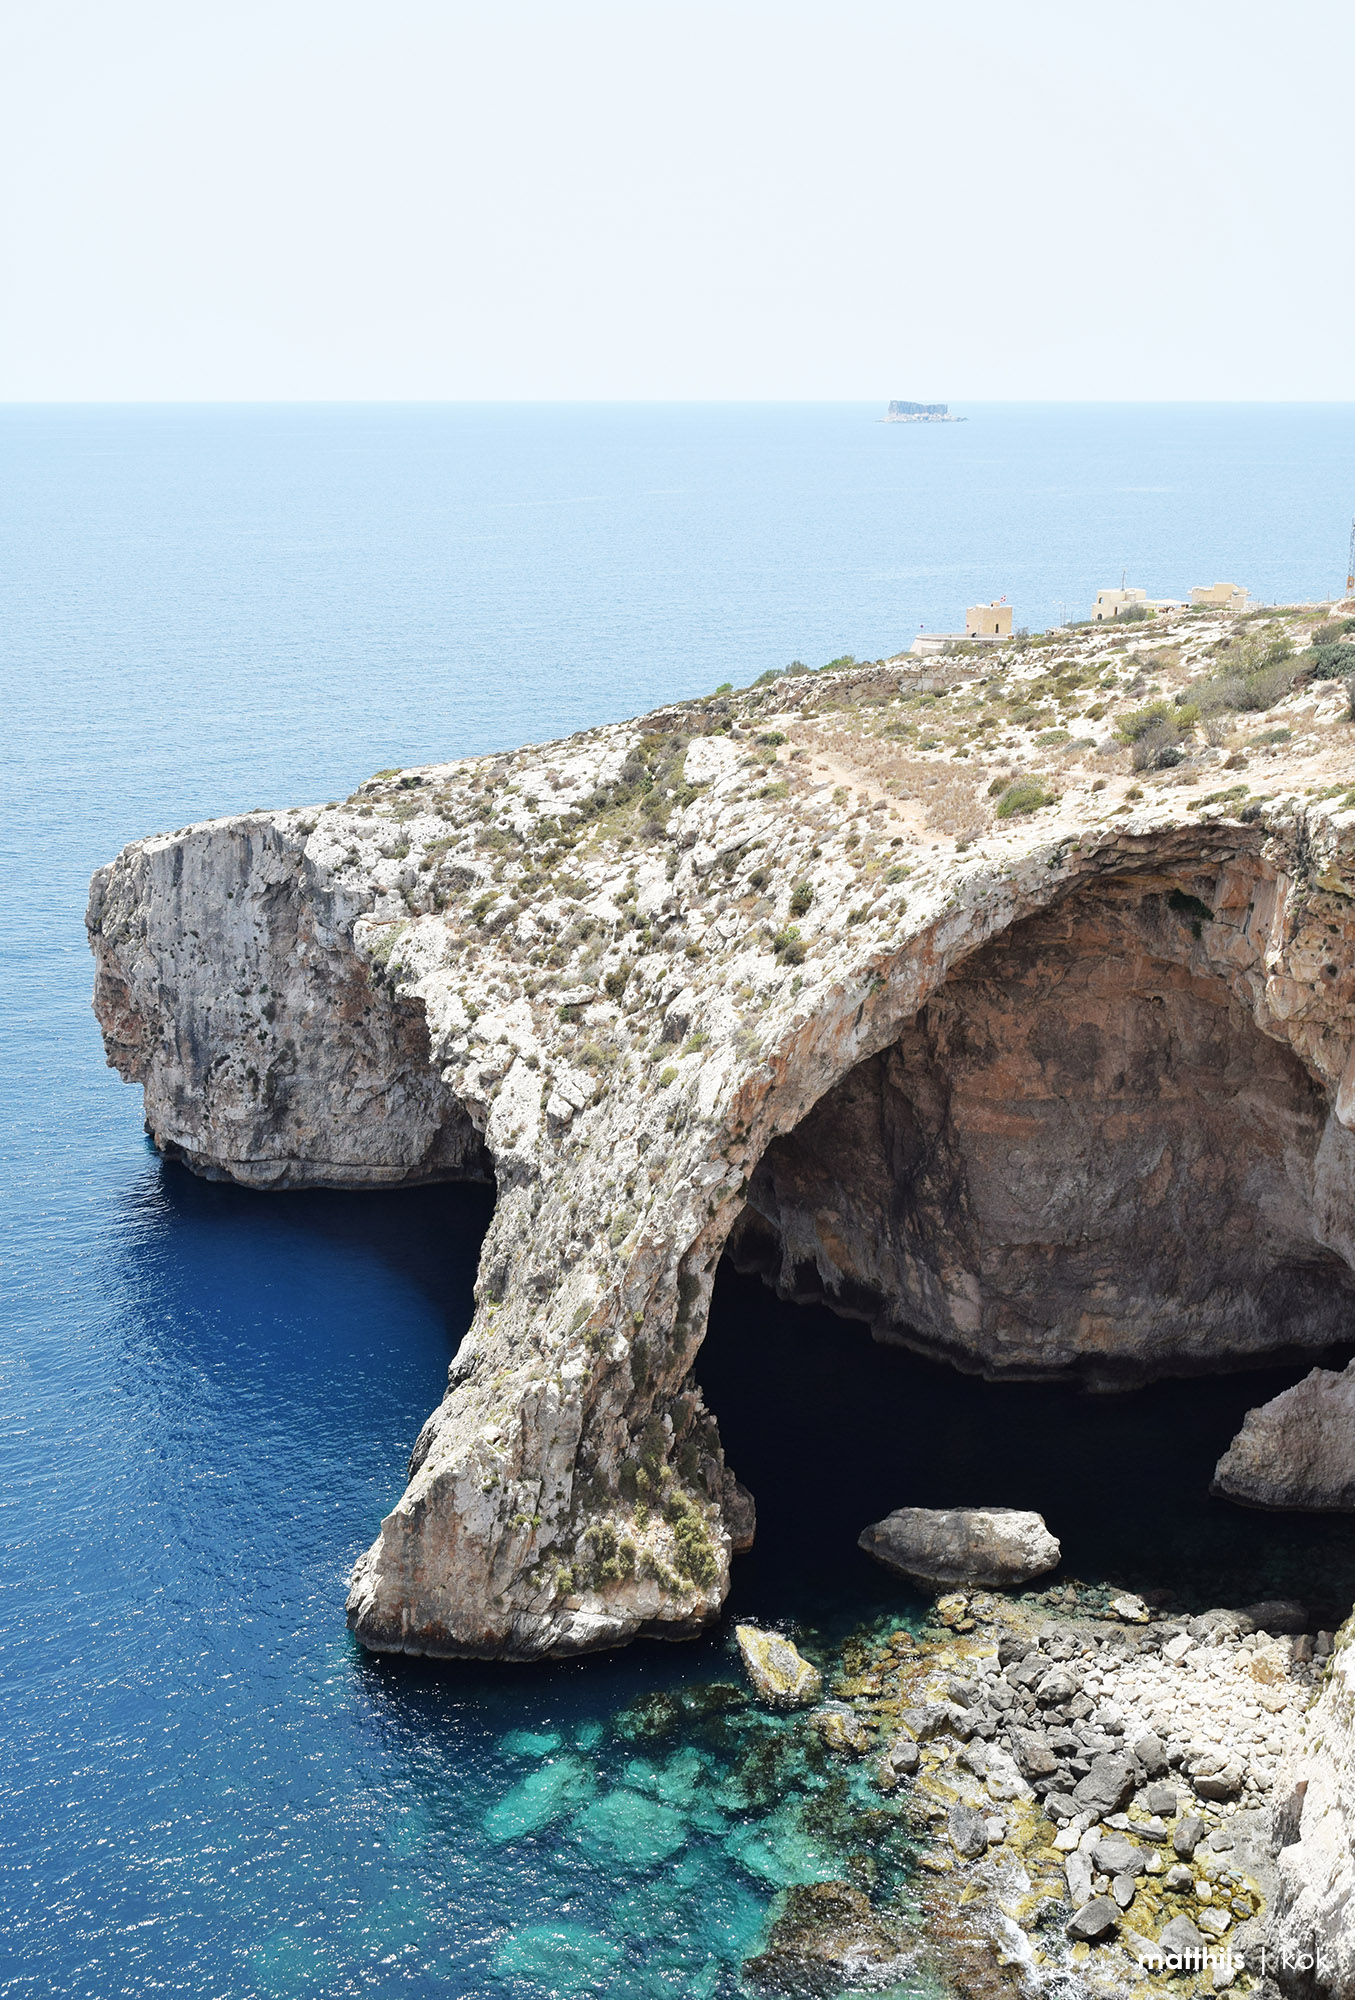 Blue Grotto, Malta | Photo by Matthijs Kok